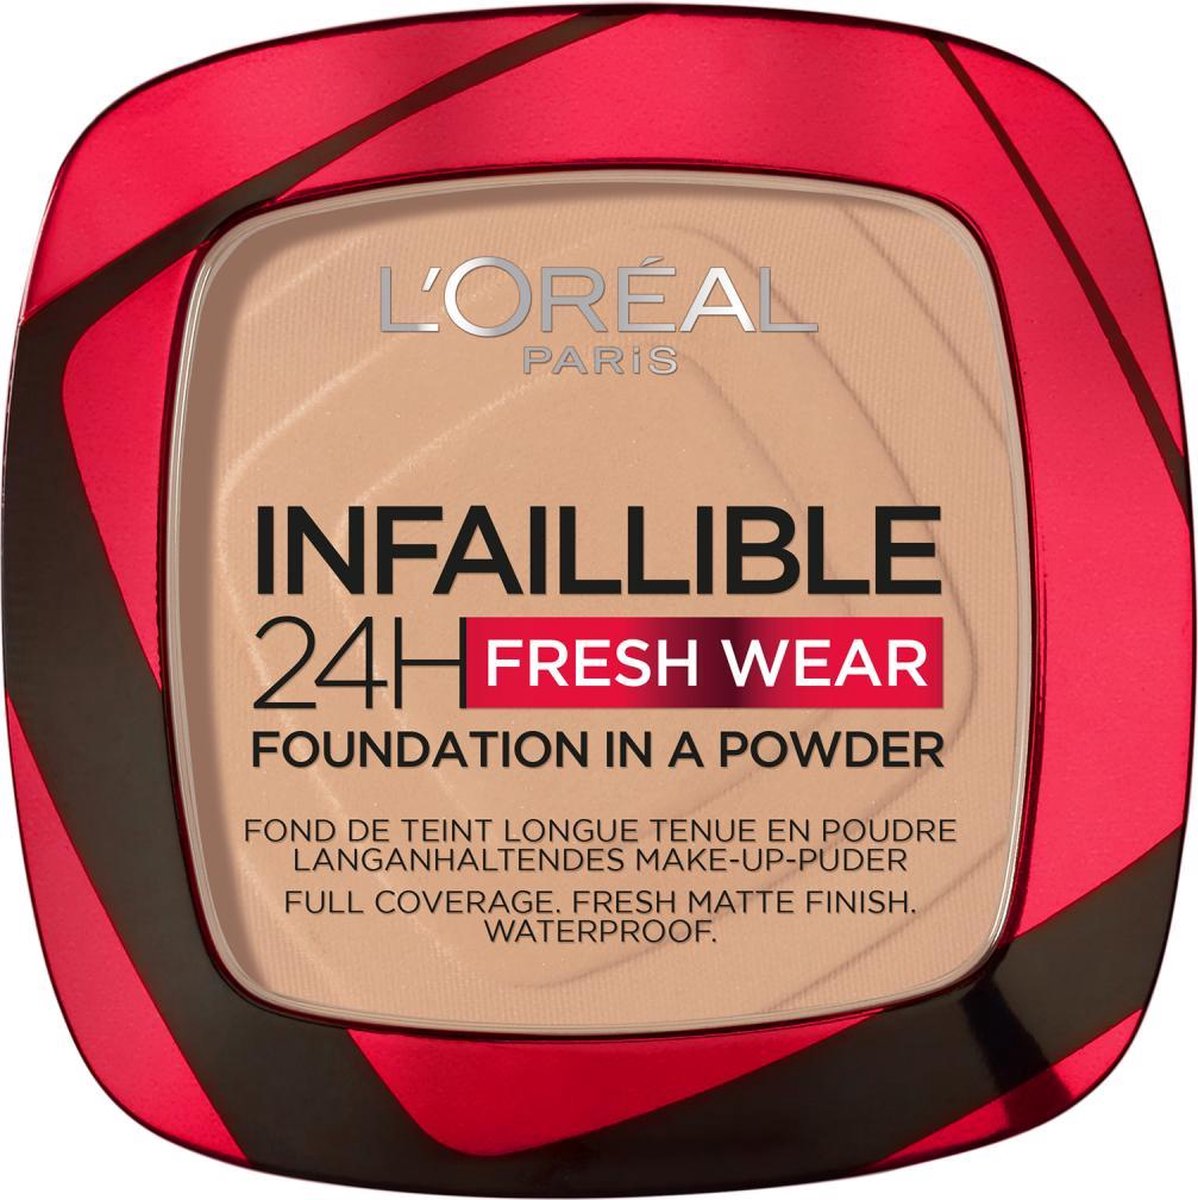 Infaillible 24H Fresh Wear Foundation in a Powder 120 Vanille Foundation en poeder in één 8gr - L’Oréal Paris